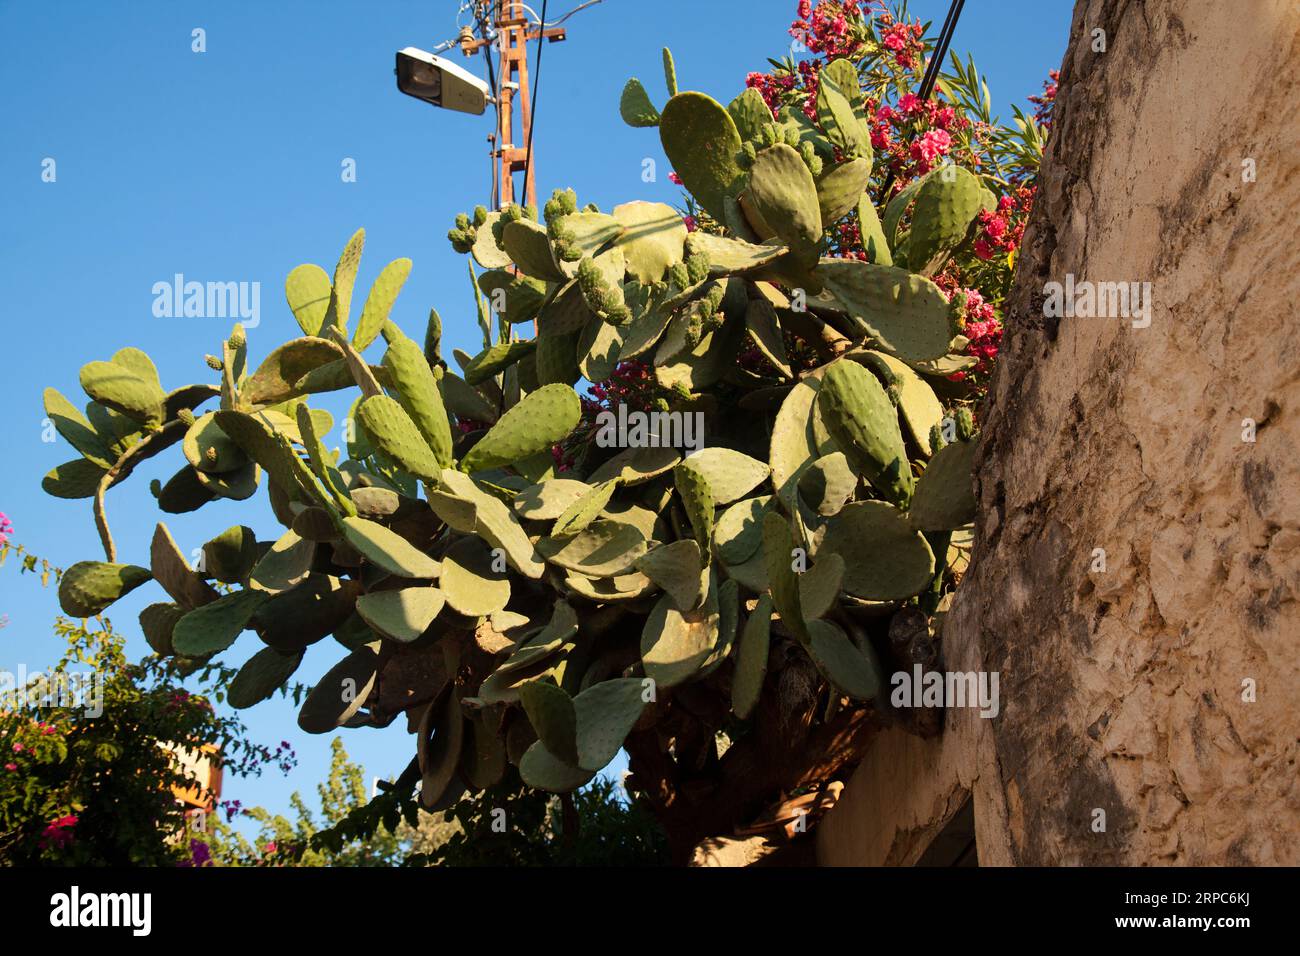 Ananas ou plante opuntia de la famille des cactus qui pousse dans les climats tropicaux, lieu Turquie Mugla Datca Banque D'Images